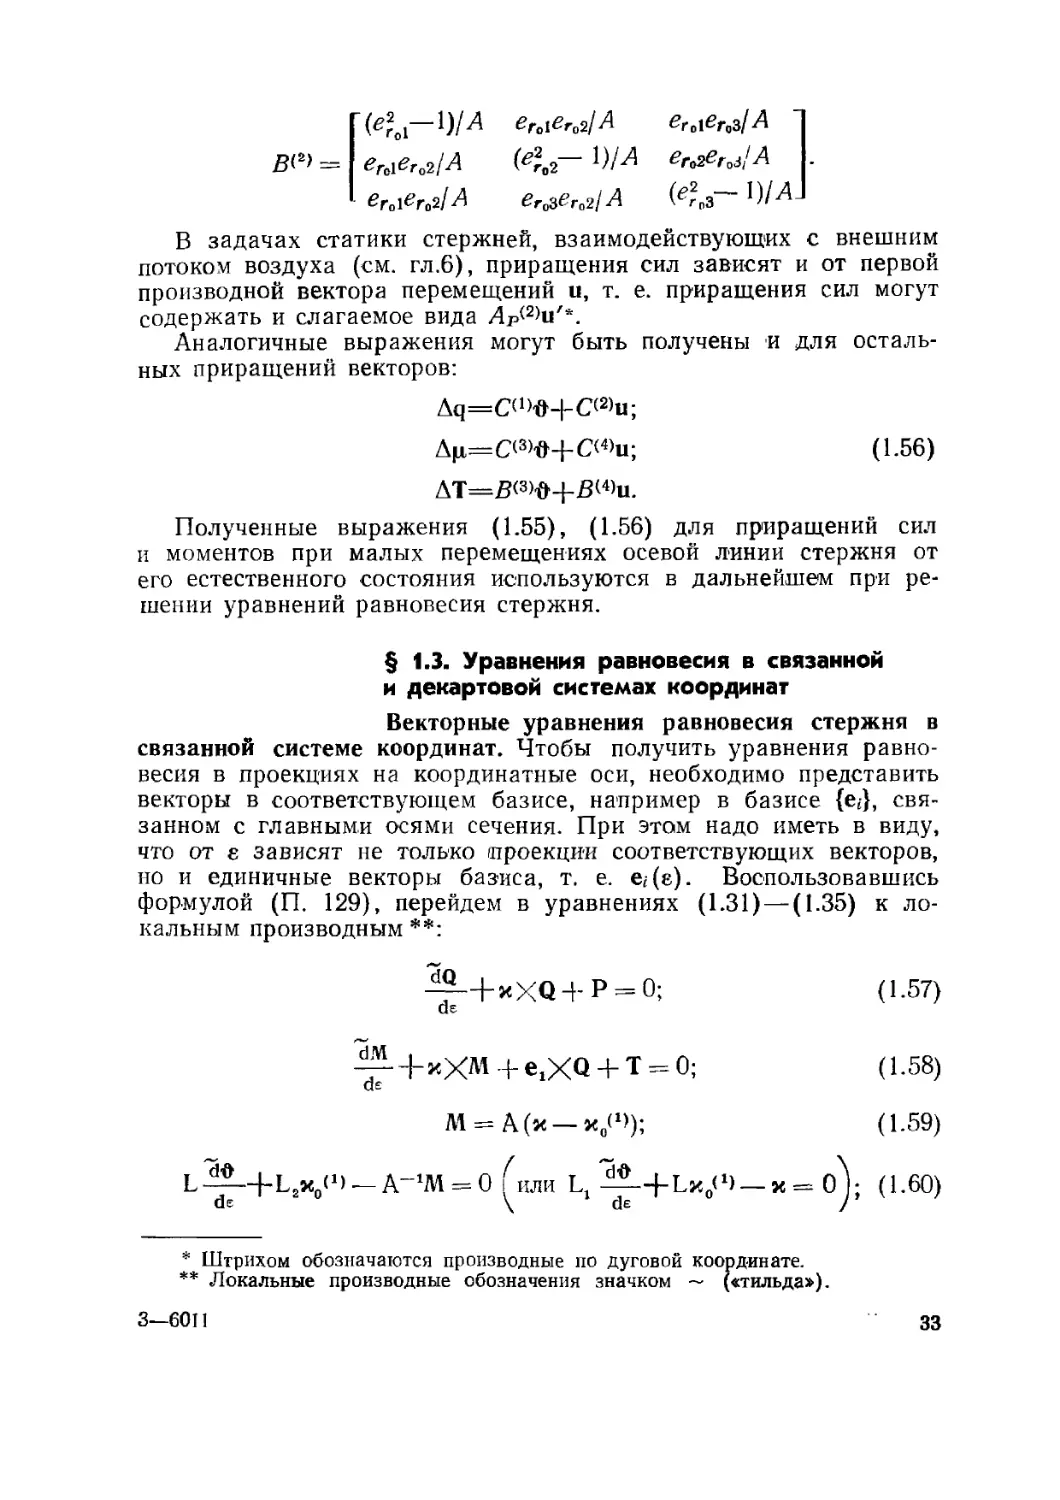 § 1.3. Уравнения равновесия в связанной и декартовой системах координат